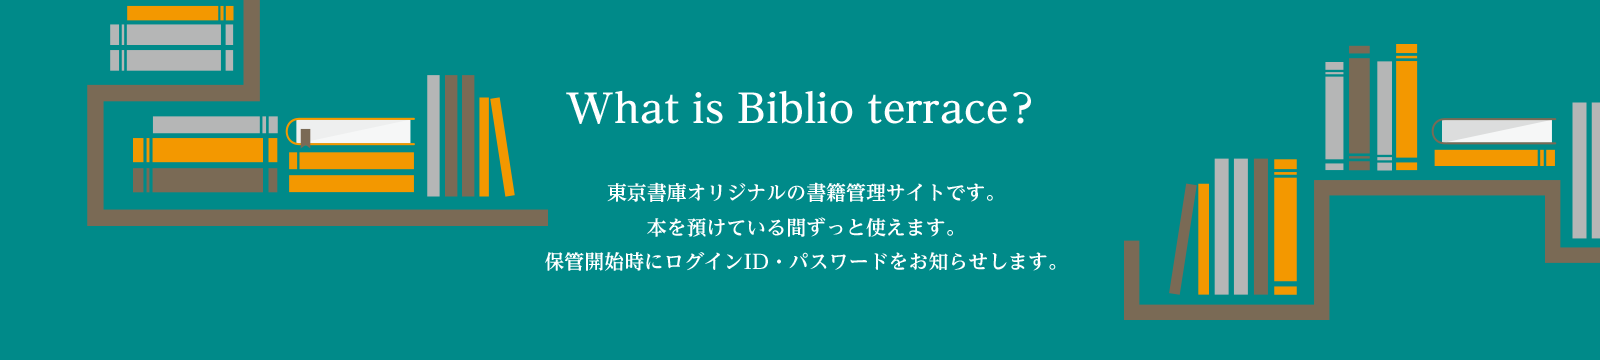 What is Biblio terrace？東京書庫オリジナルの書籍管理サイトです。本を預けている間ずっと使えます。保管開始時にログインID・パスワードをお知らせします。